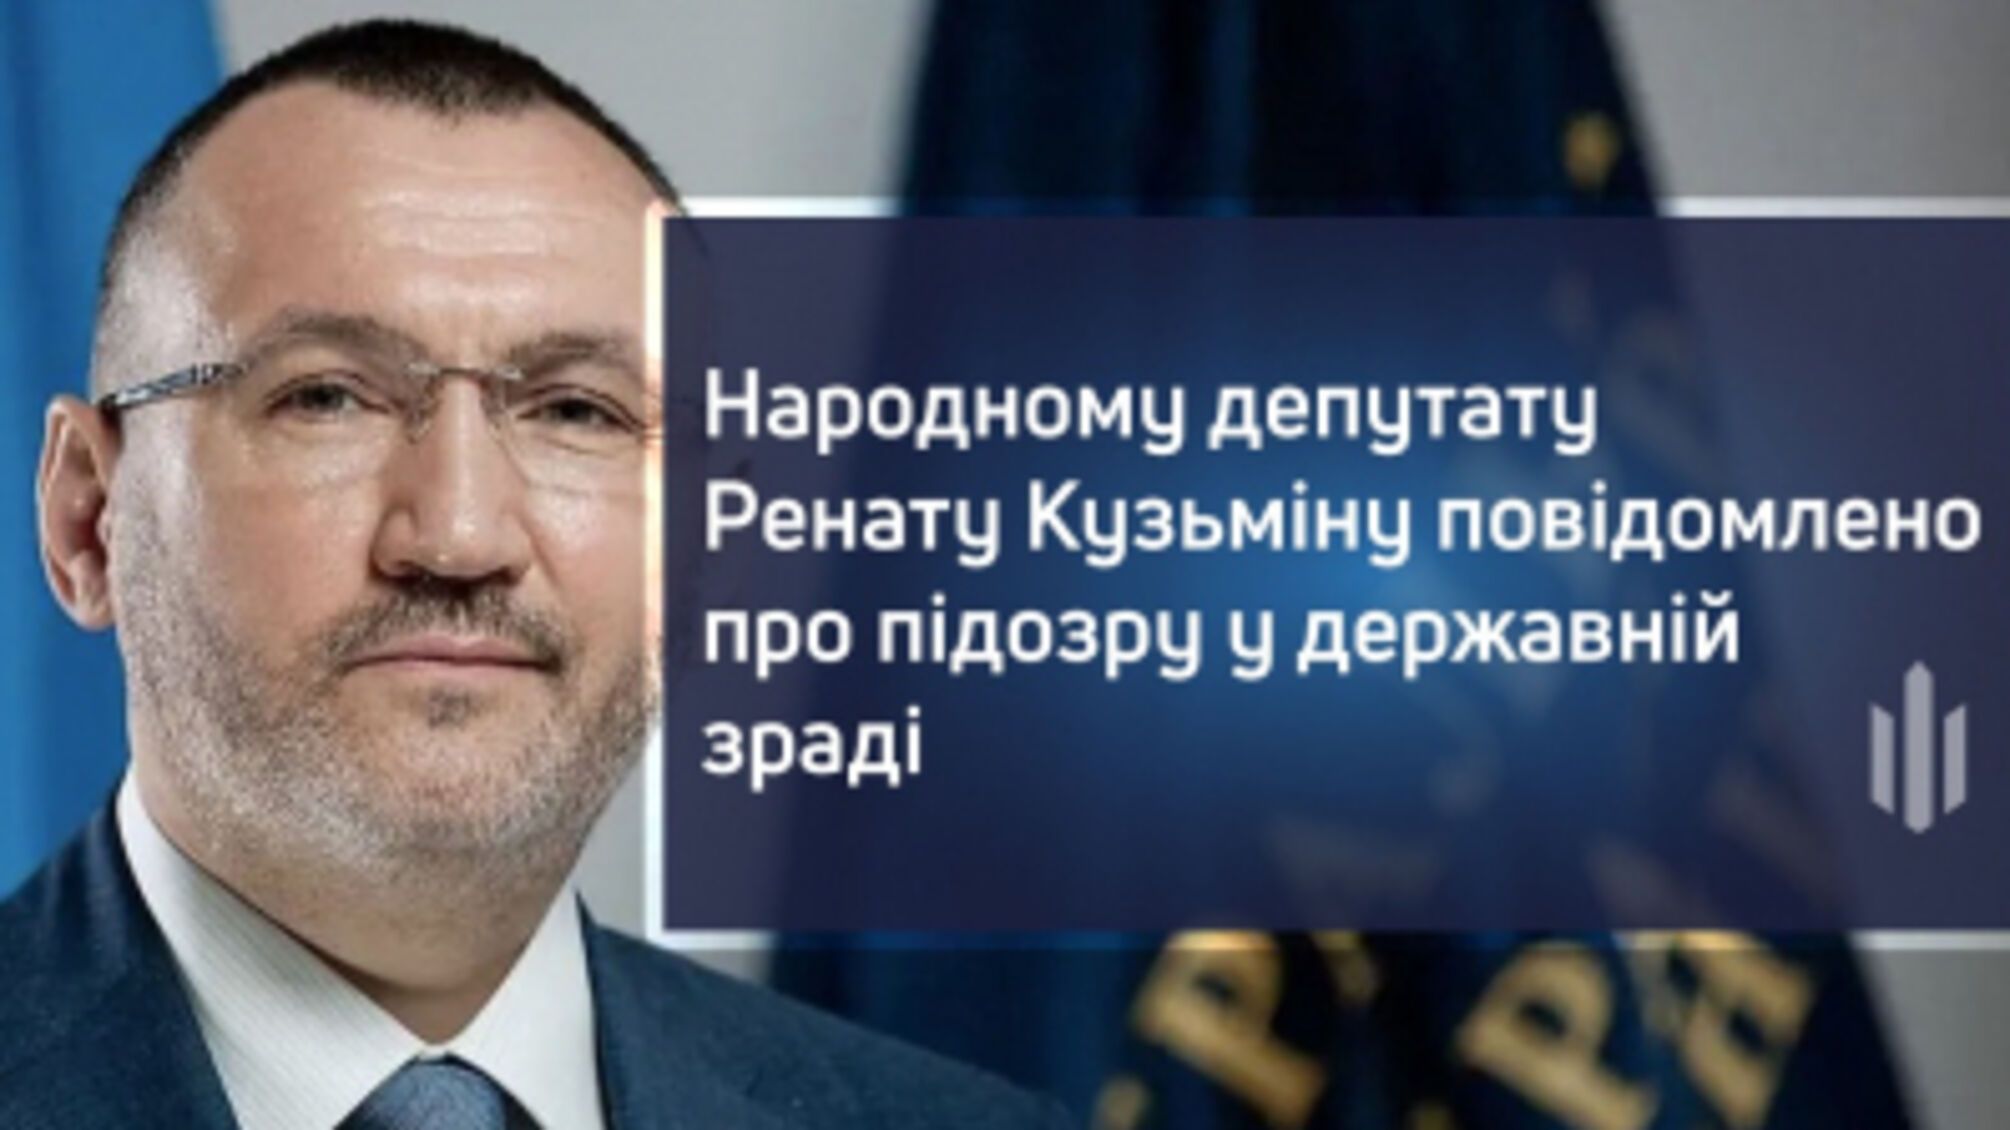 Нардепу Ренату Кузьмину сообщили о подозрении в государственной измене